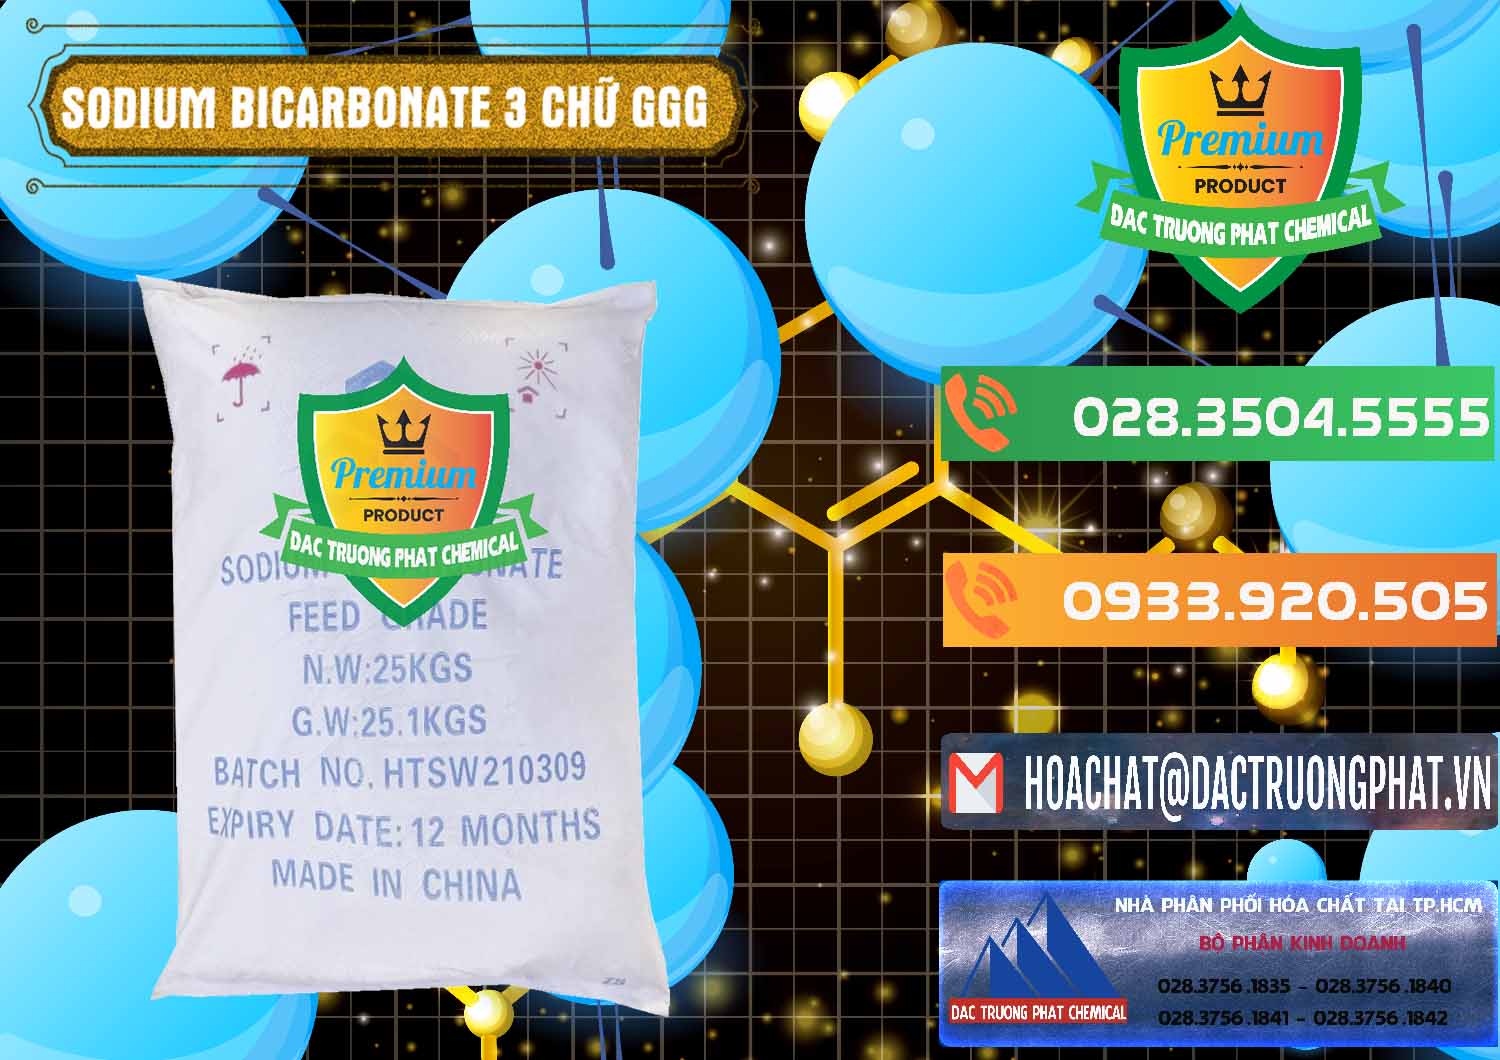 Chuyên bán & cung cấp Sodium Bicarbonate – Bicar NaHCO3 Food Grade 3 Chữ GGG Trung Quốc China - 0259 - Cung cấp ( phân phối ) hóa chất tại TP.HCM - hoachatxulynuoc.com.vn